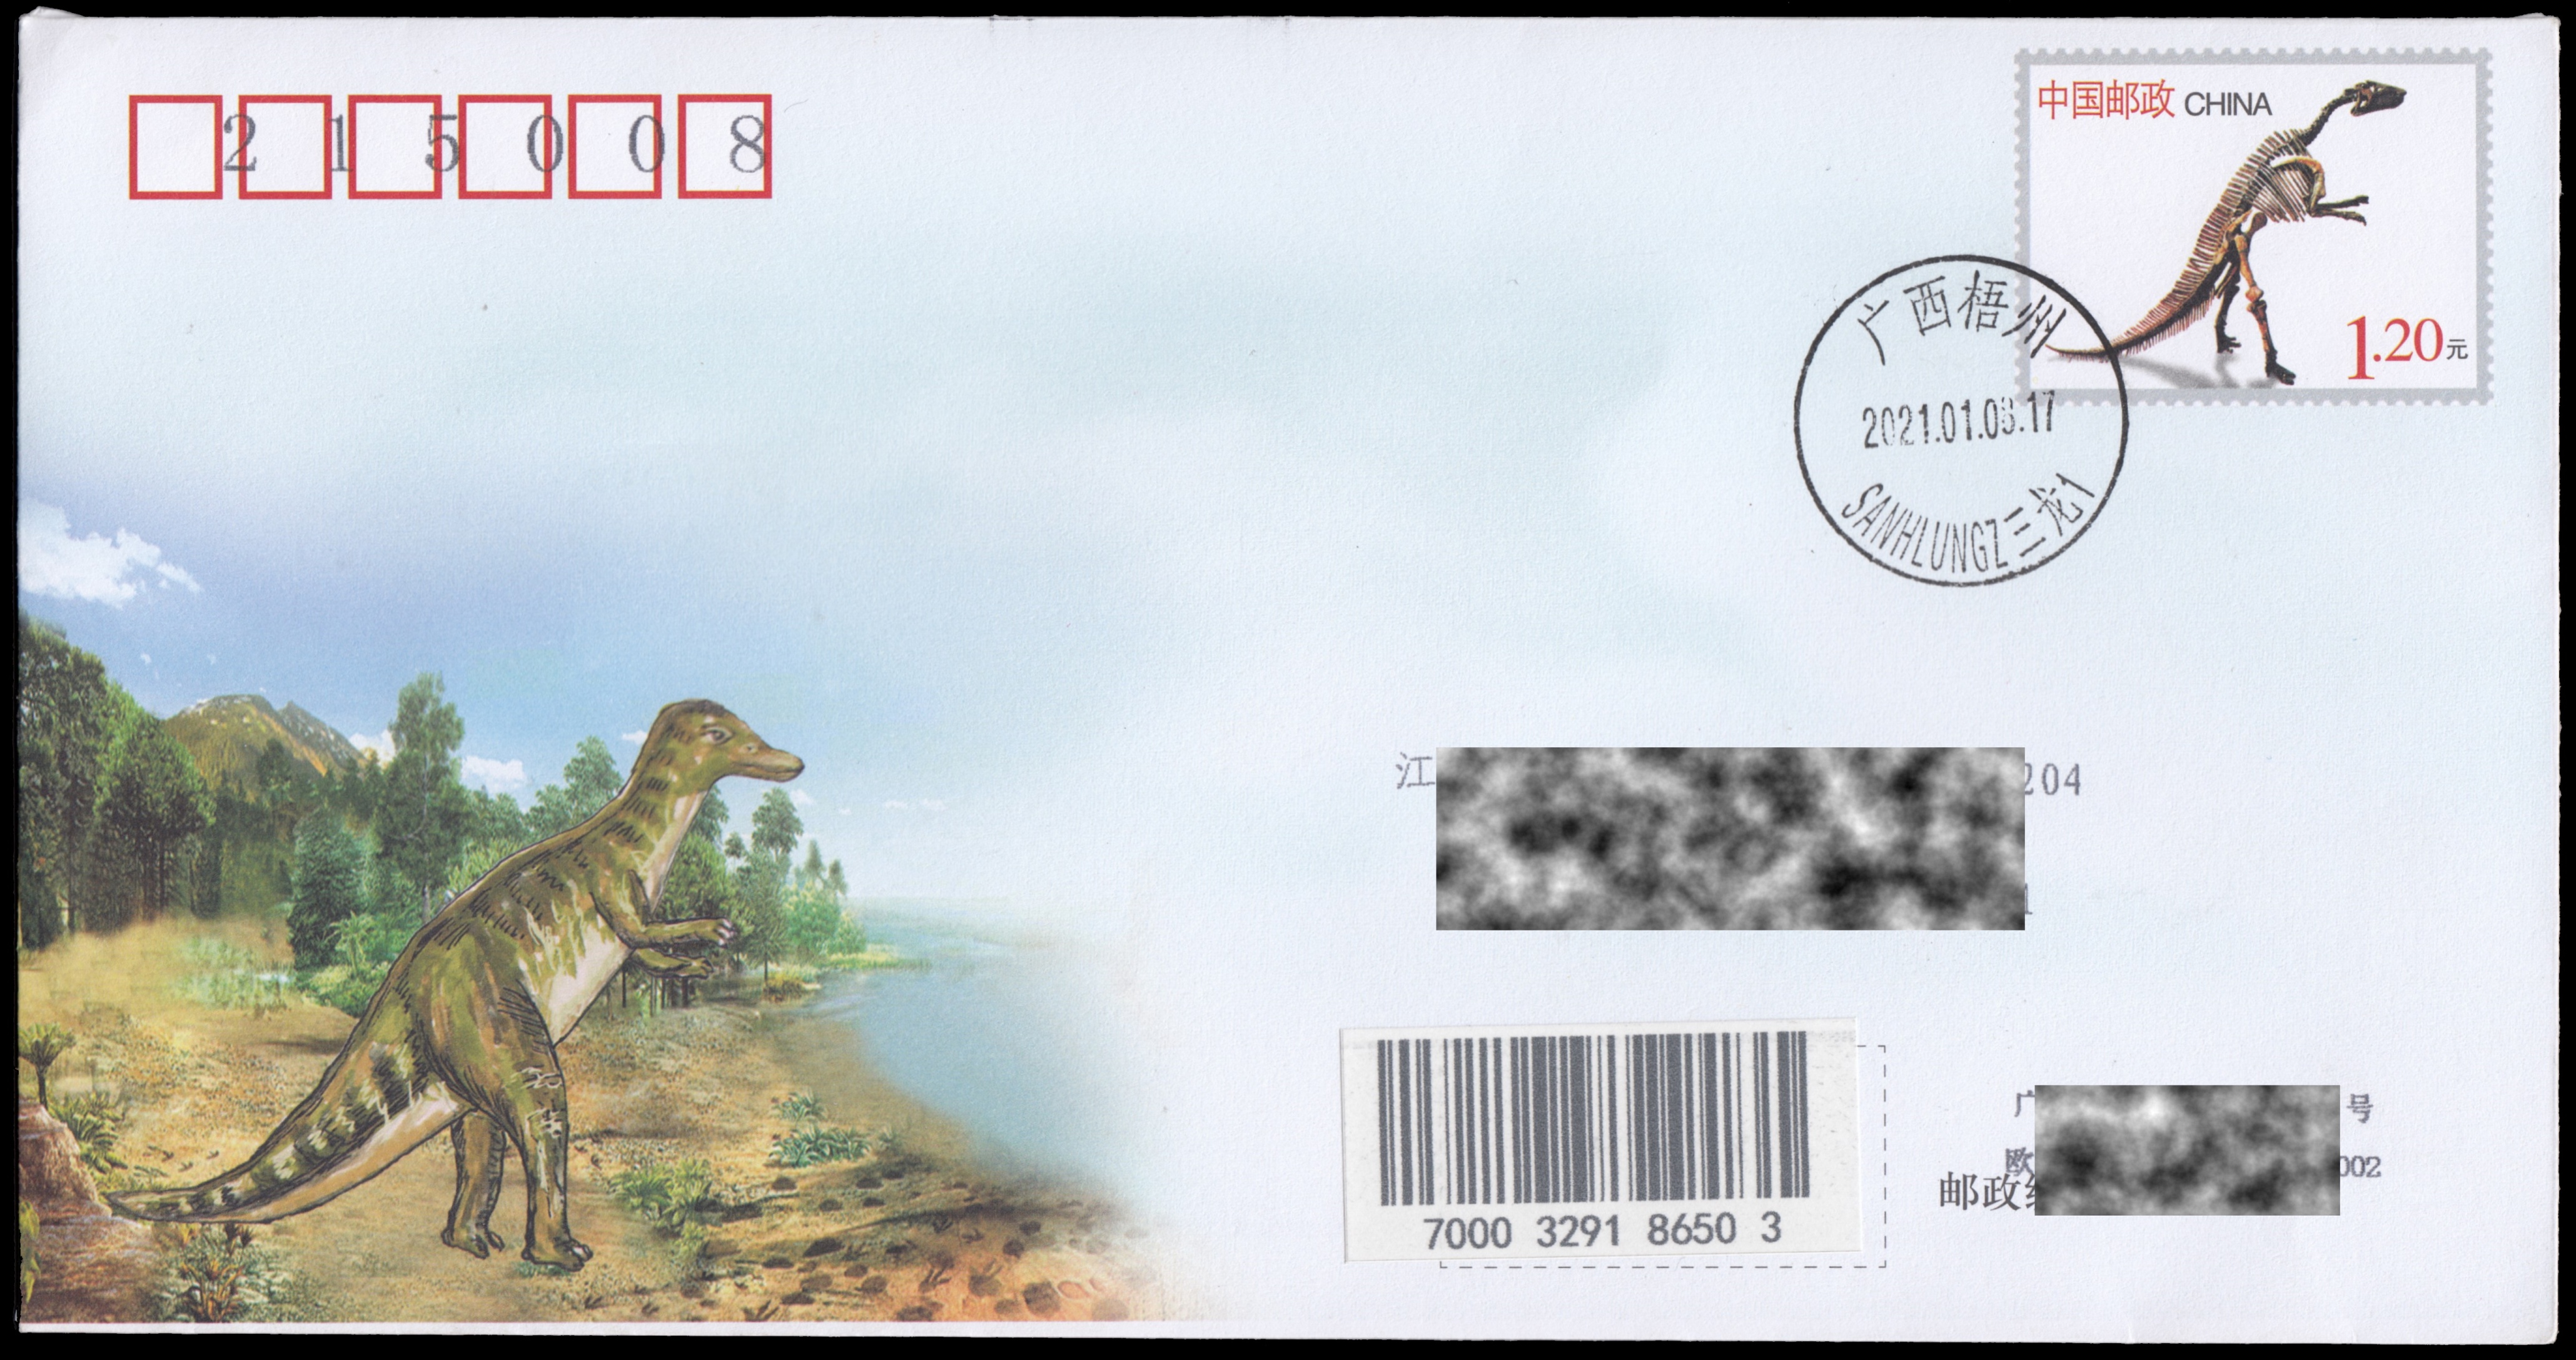 Dinosaur on postal stationery of China